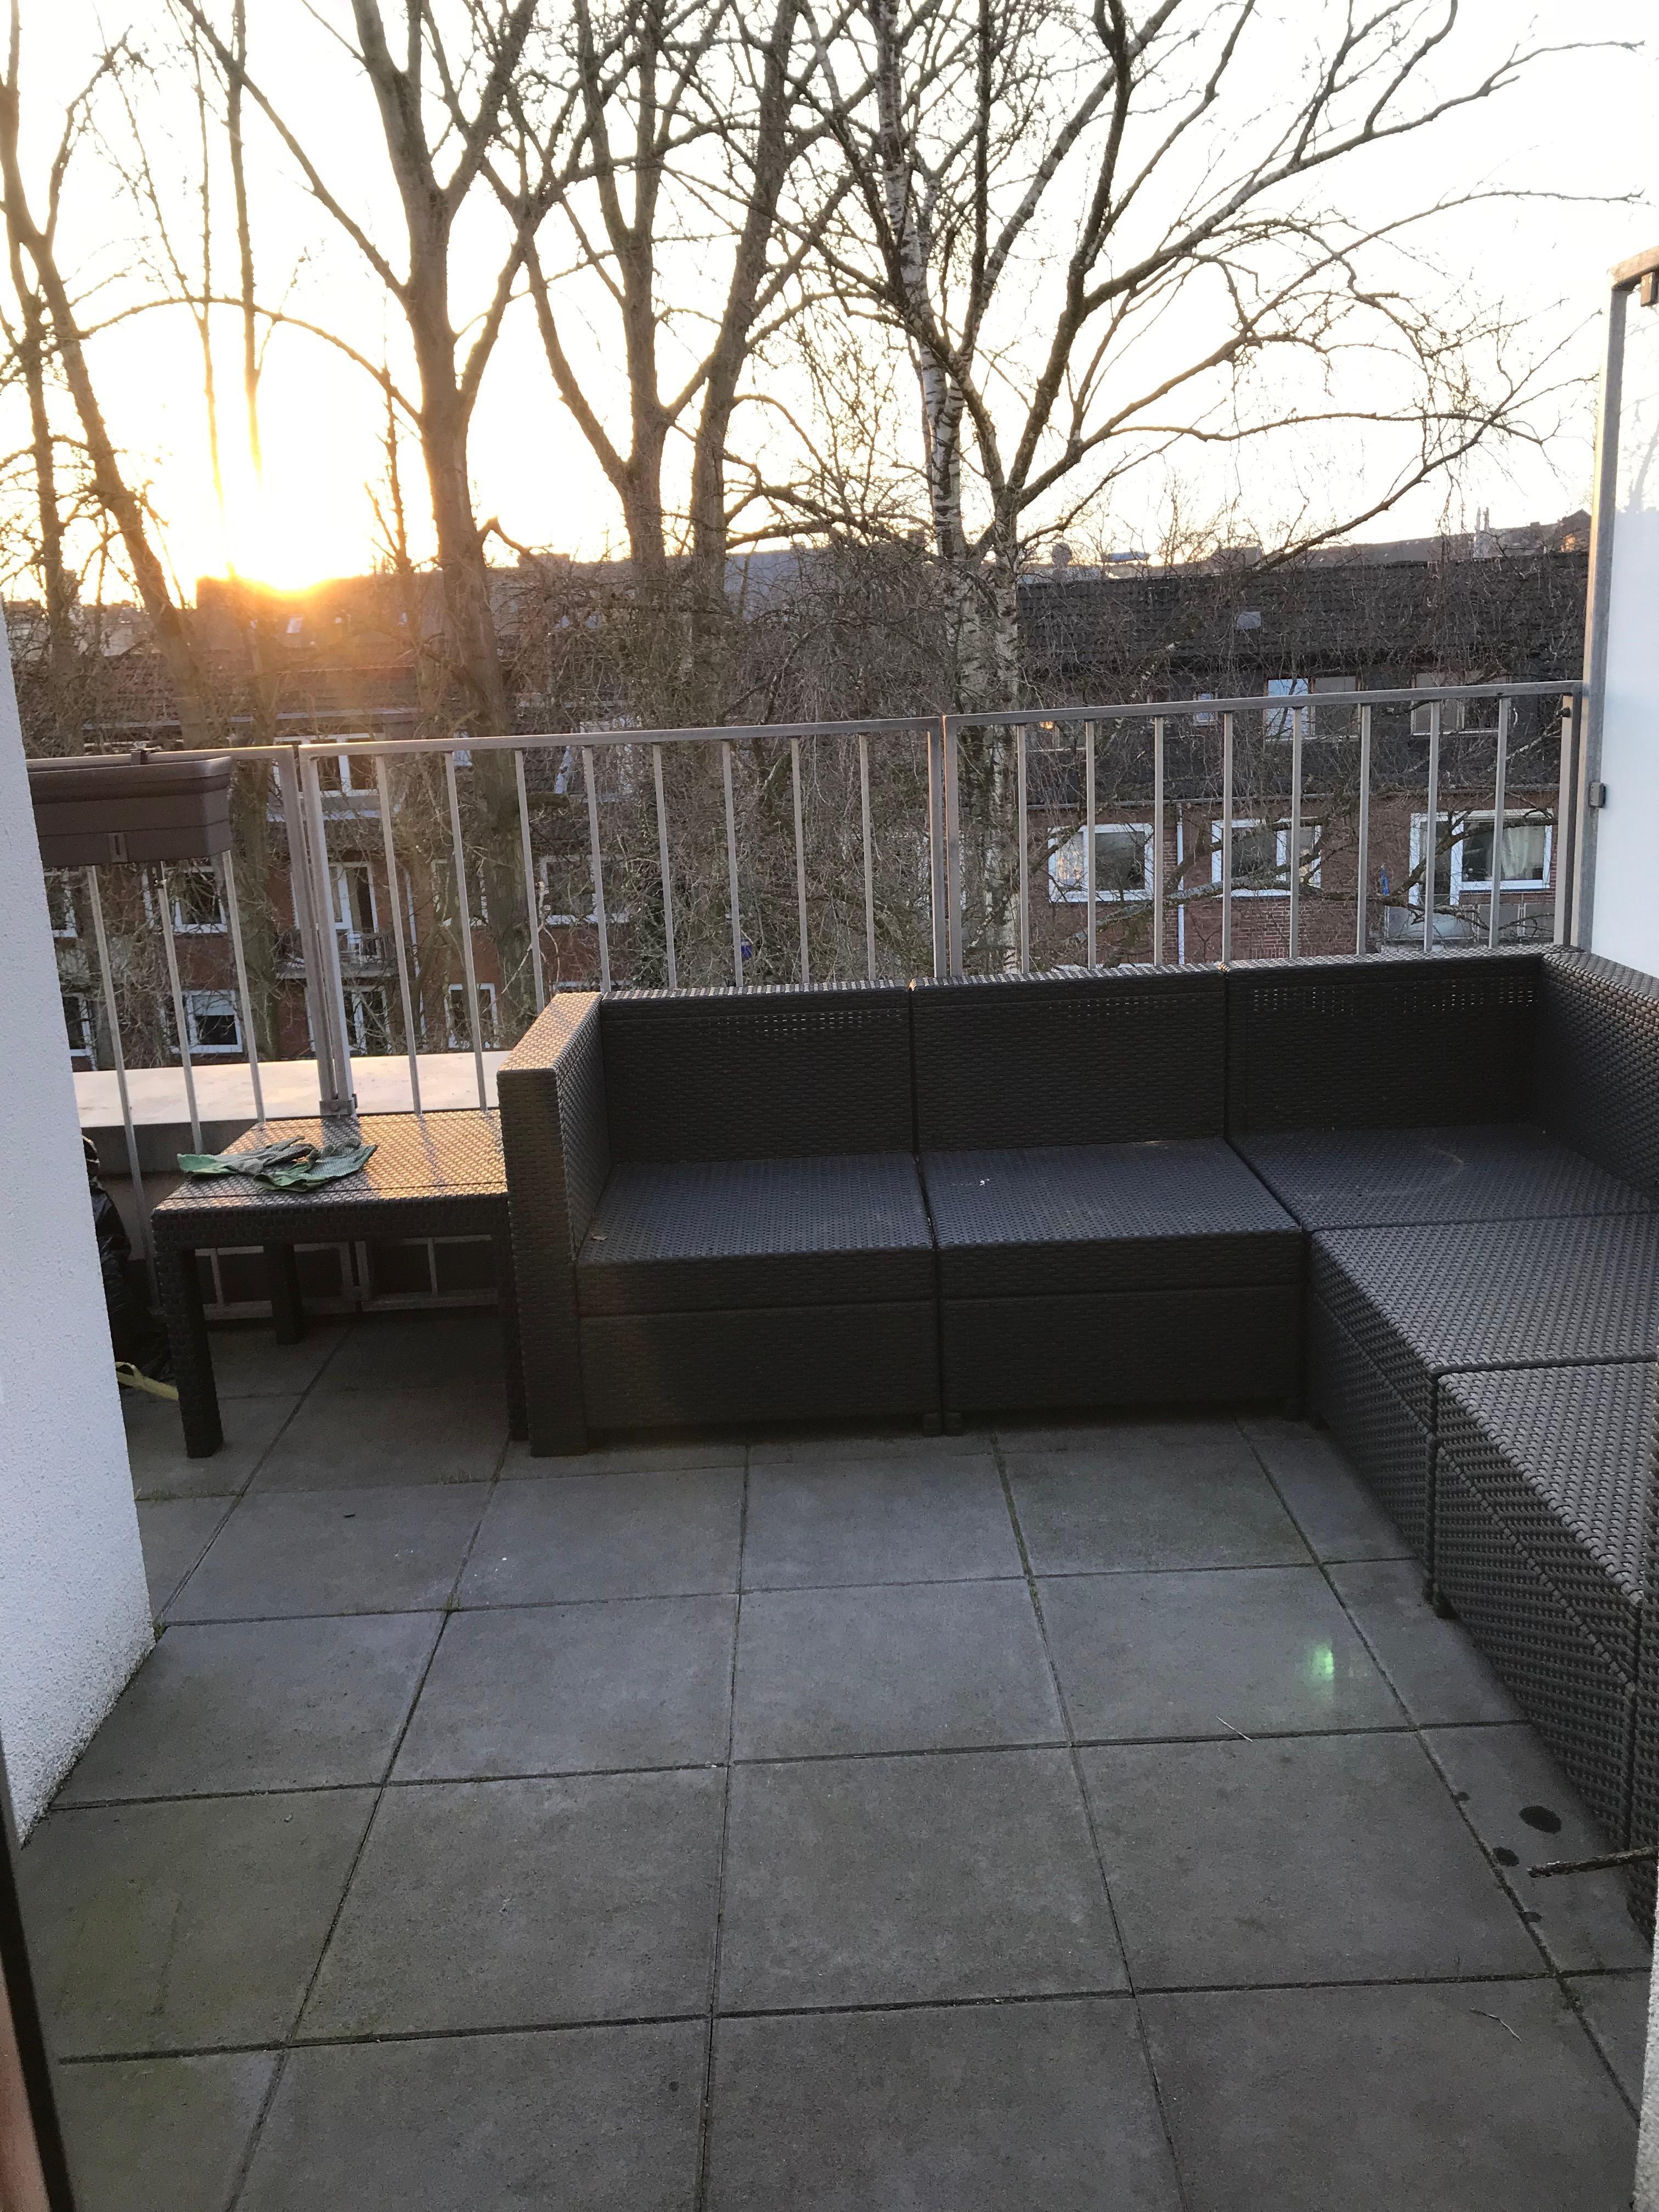 Frühjahrsputz ist gemacht, nur der Balkon fehlt noch. Clean und modern, passend zur Wohnung, wäre ein Traum. #meinbalkon